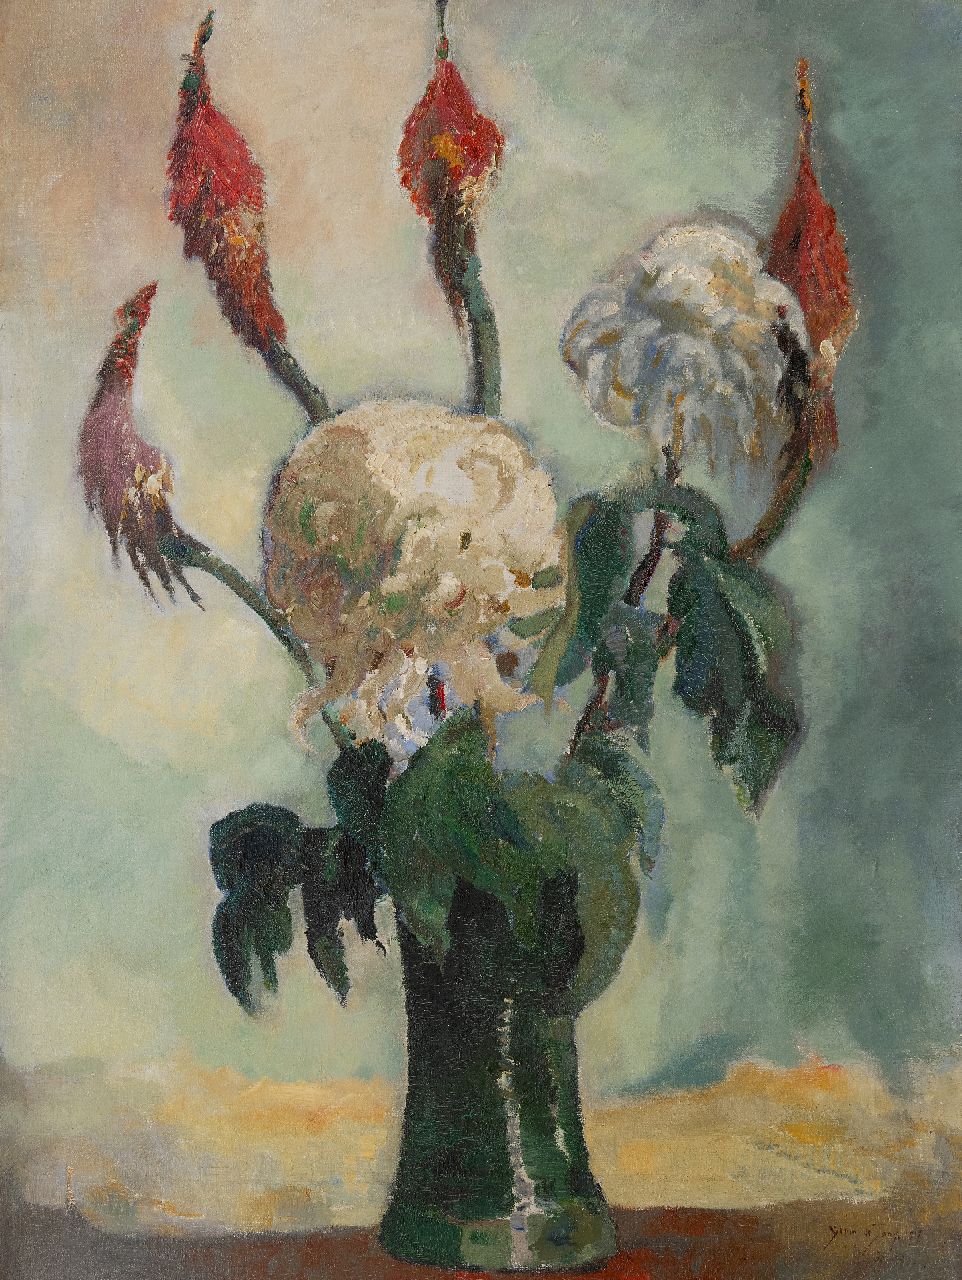 Jong G. de | Gerben 'Germ' de Jong | Gemälde zum Verkauf angeboten | Chrysanthemen, Öl auf Leinwand 80,4 x 60,4 cm, Unterzeichnet u.r. und datiert 1917